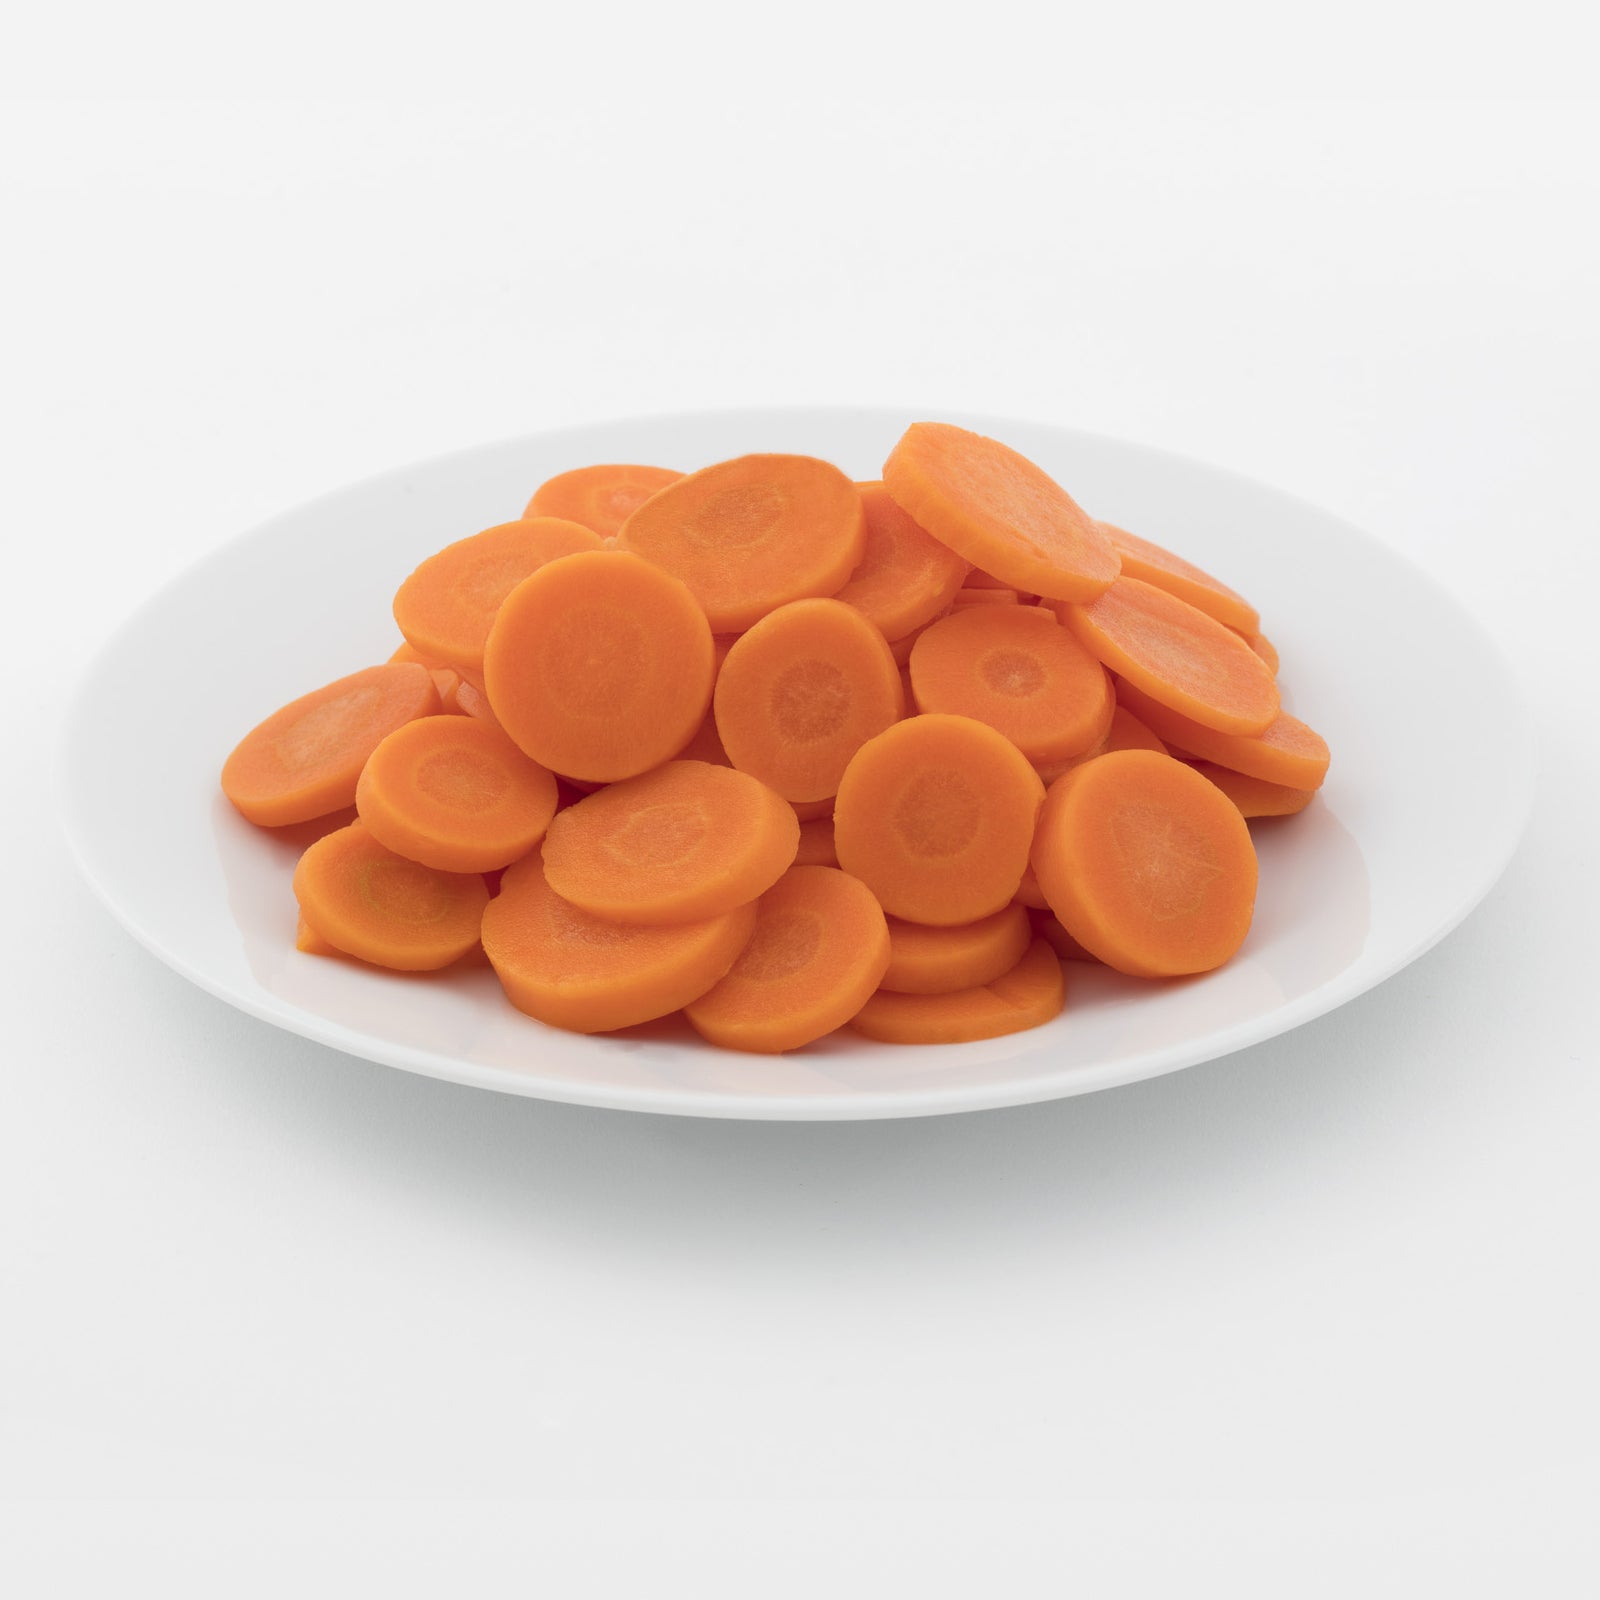 BELOW ZERO Sliced carrots